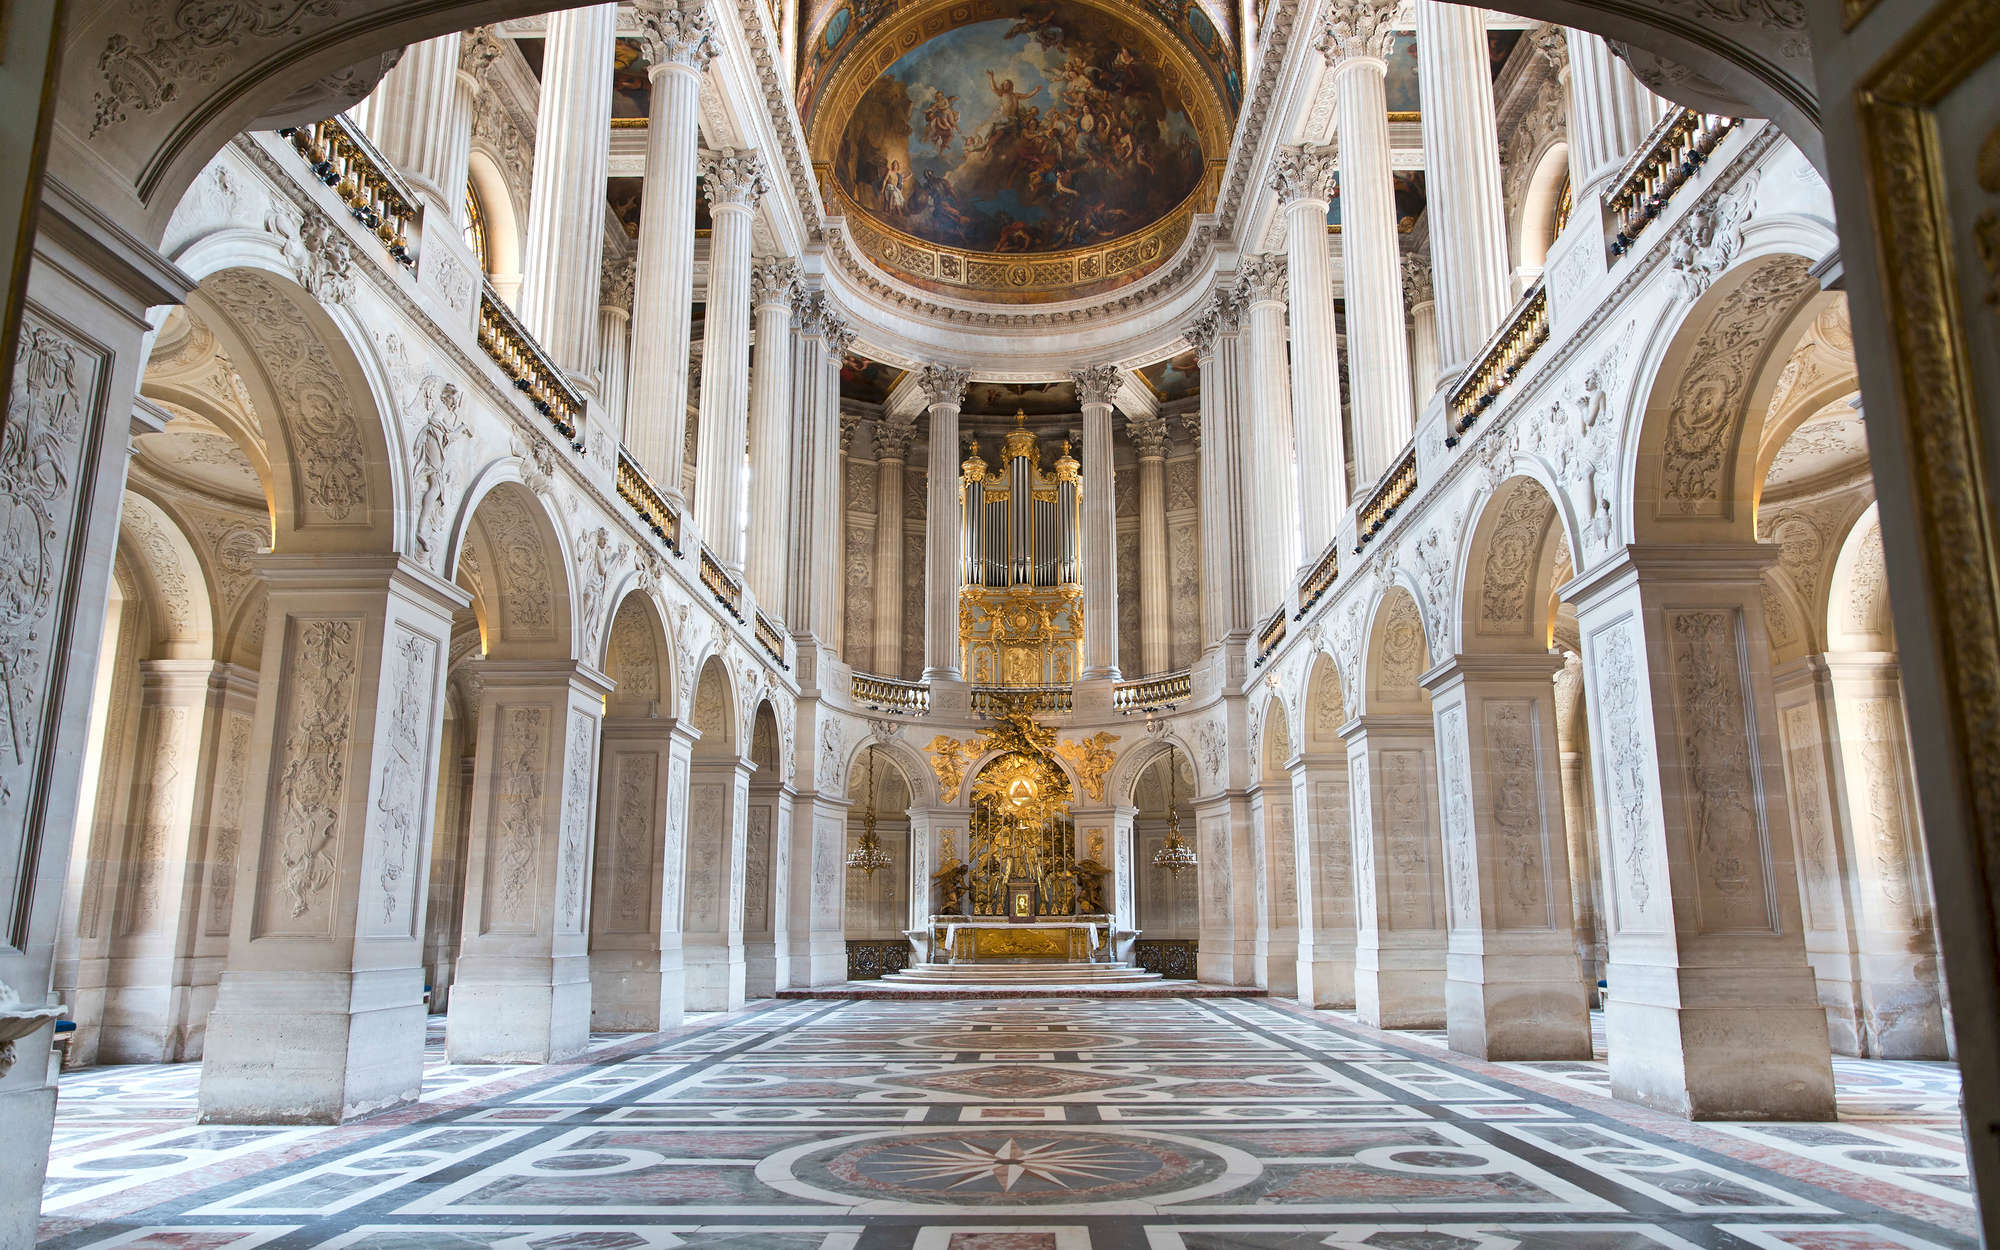             Barock Fototapete Schloss Versailles Saal – Perlmutt Glattvlies
        